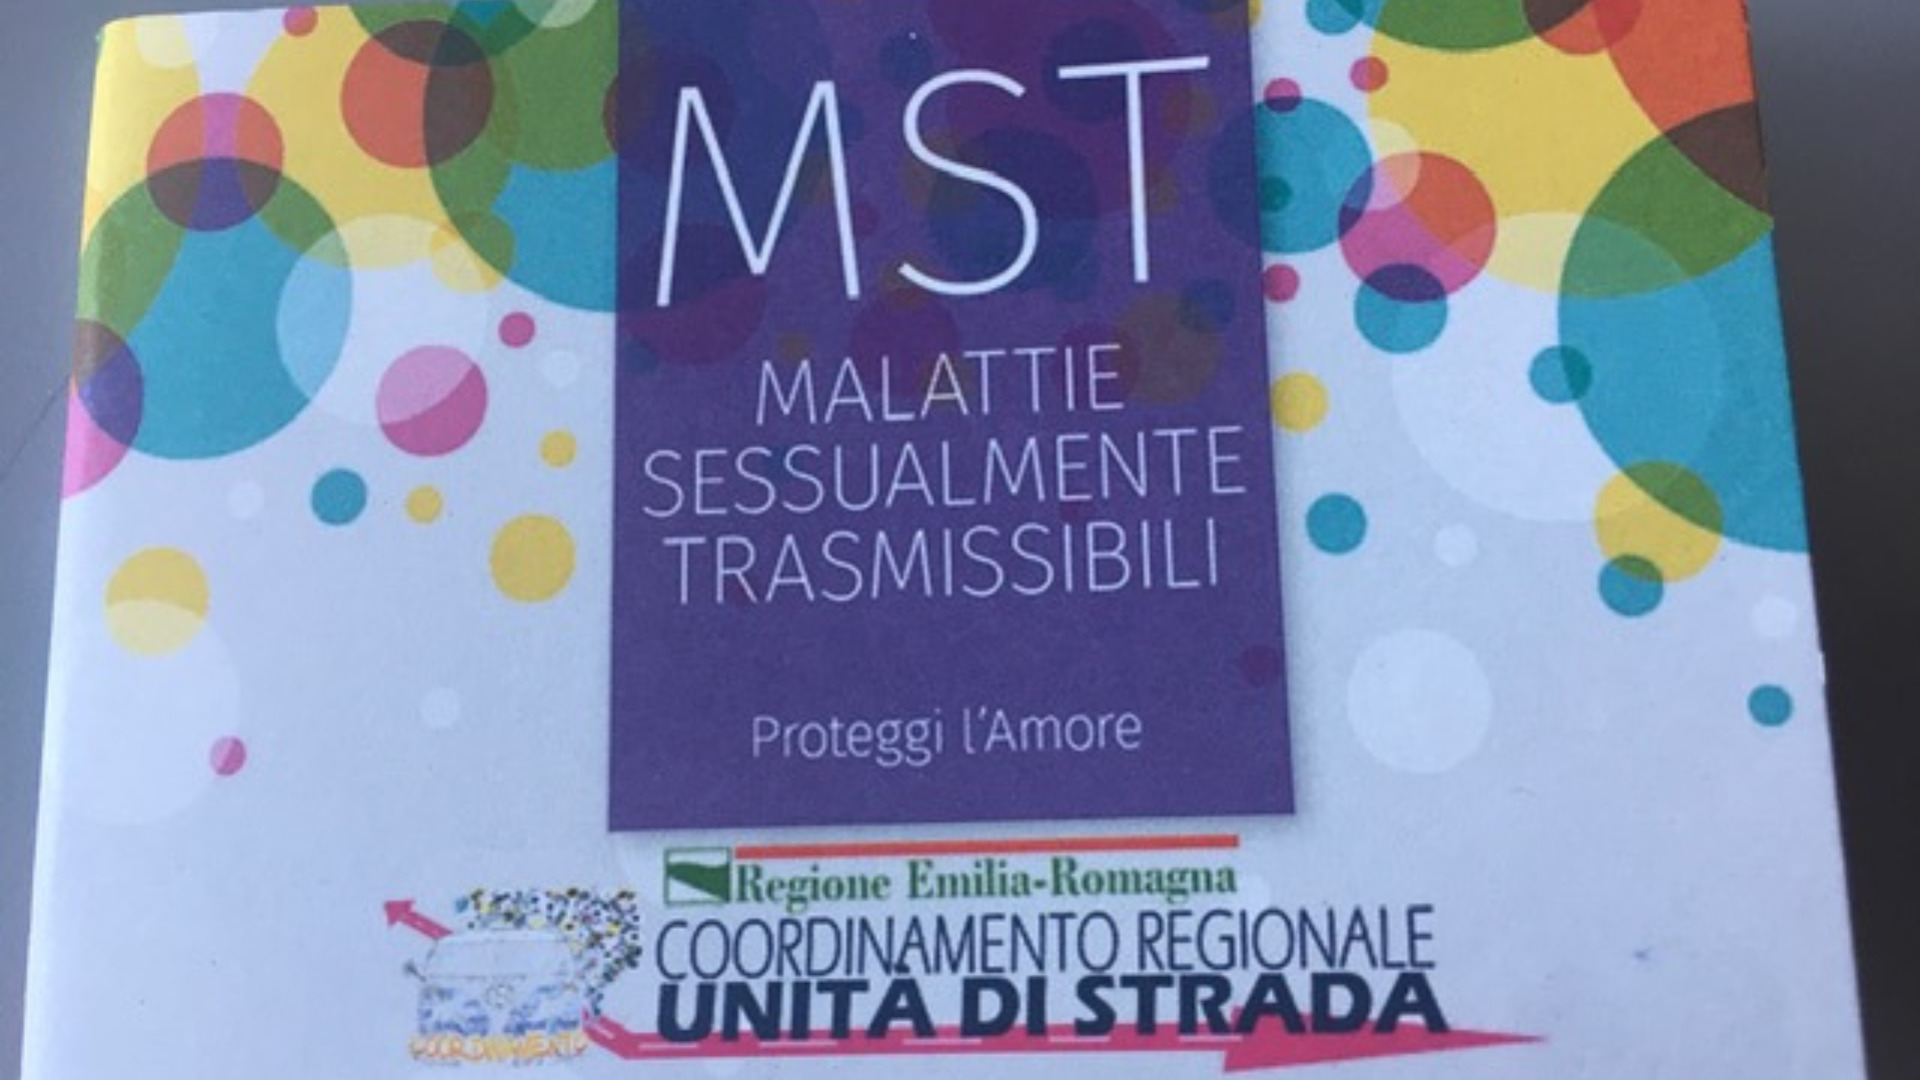 Opuscolo Malattie Sessualmente Trasmissibili_Regione Emilia-Romagna_foto.jpeg